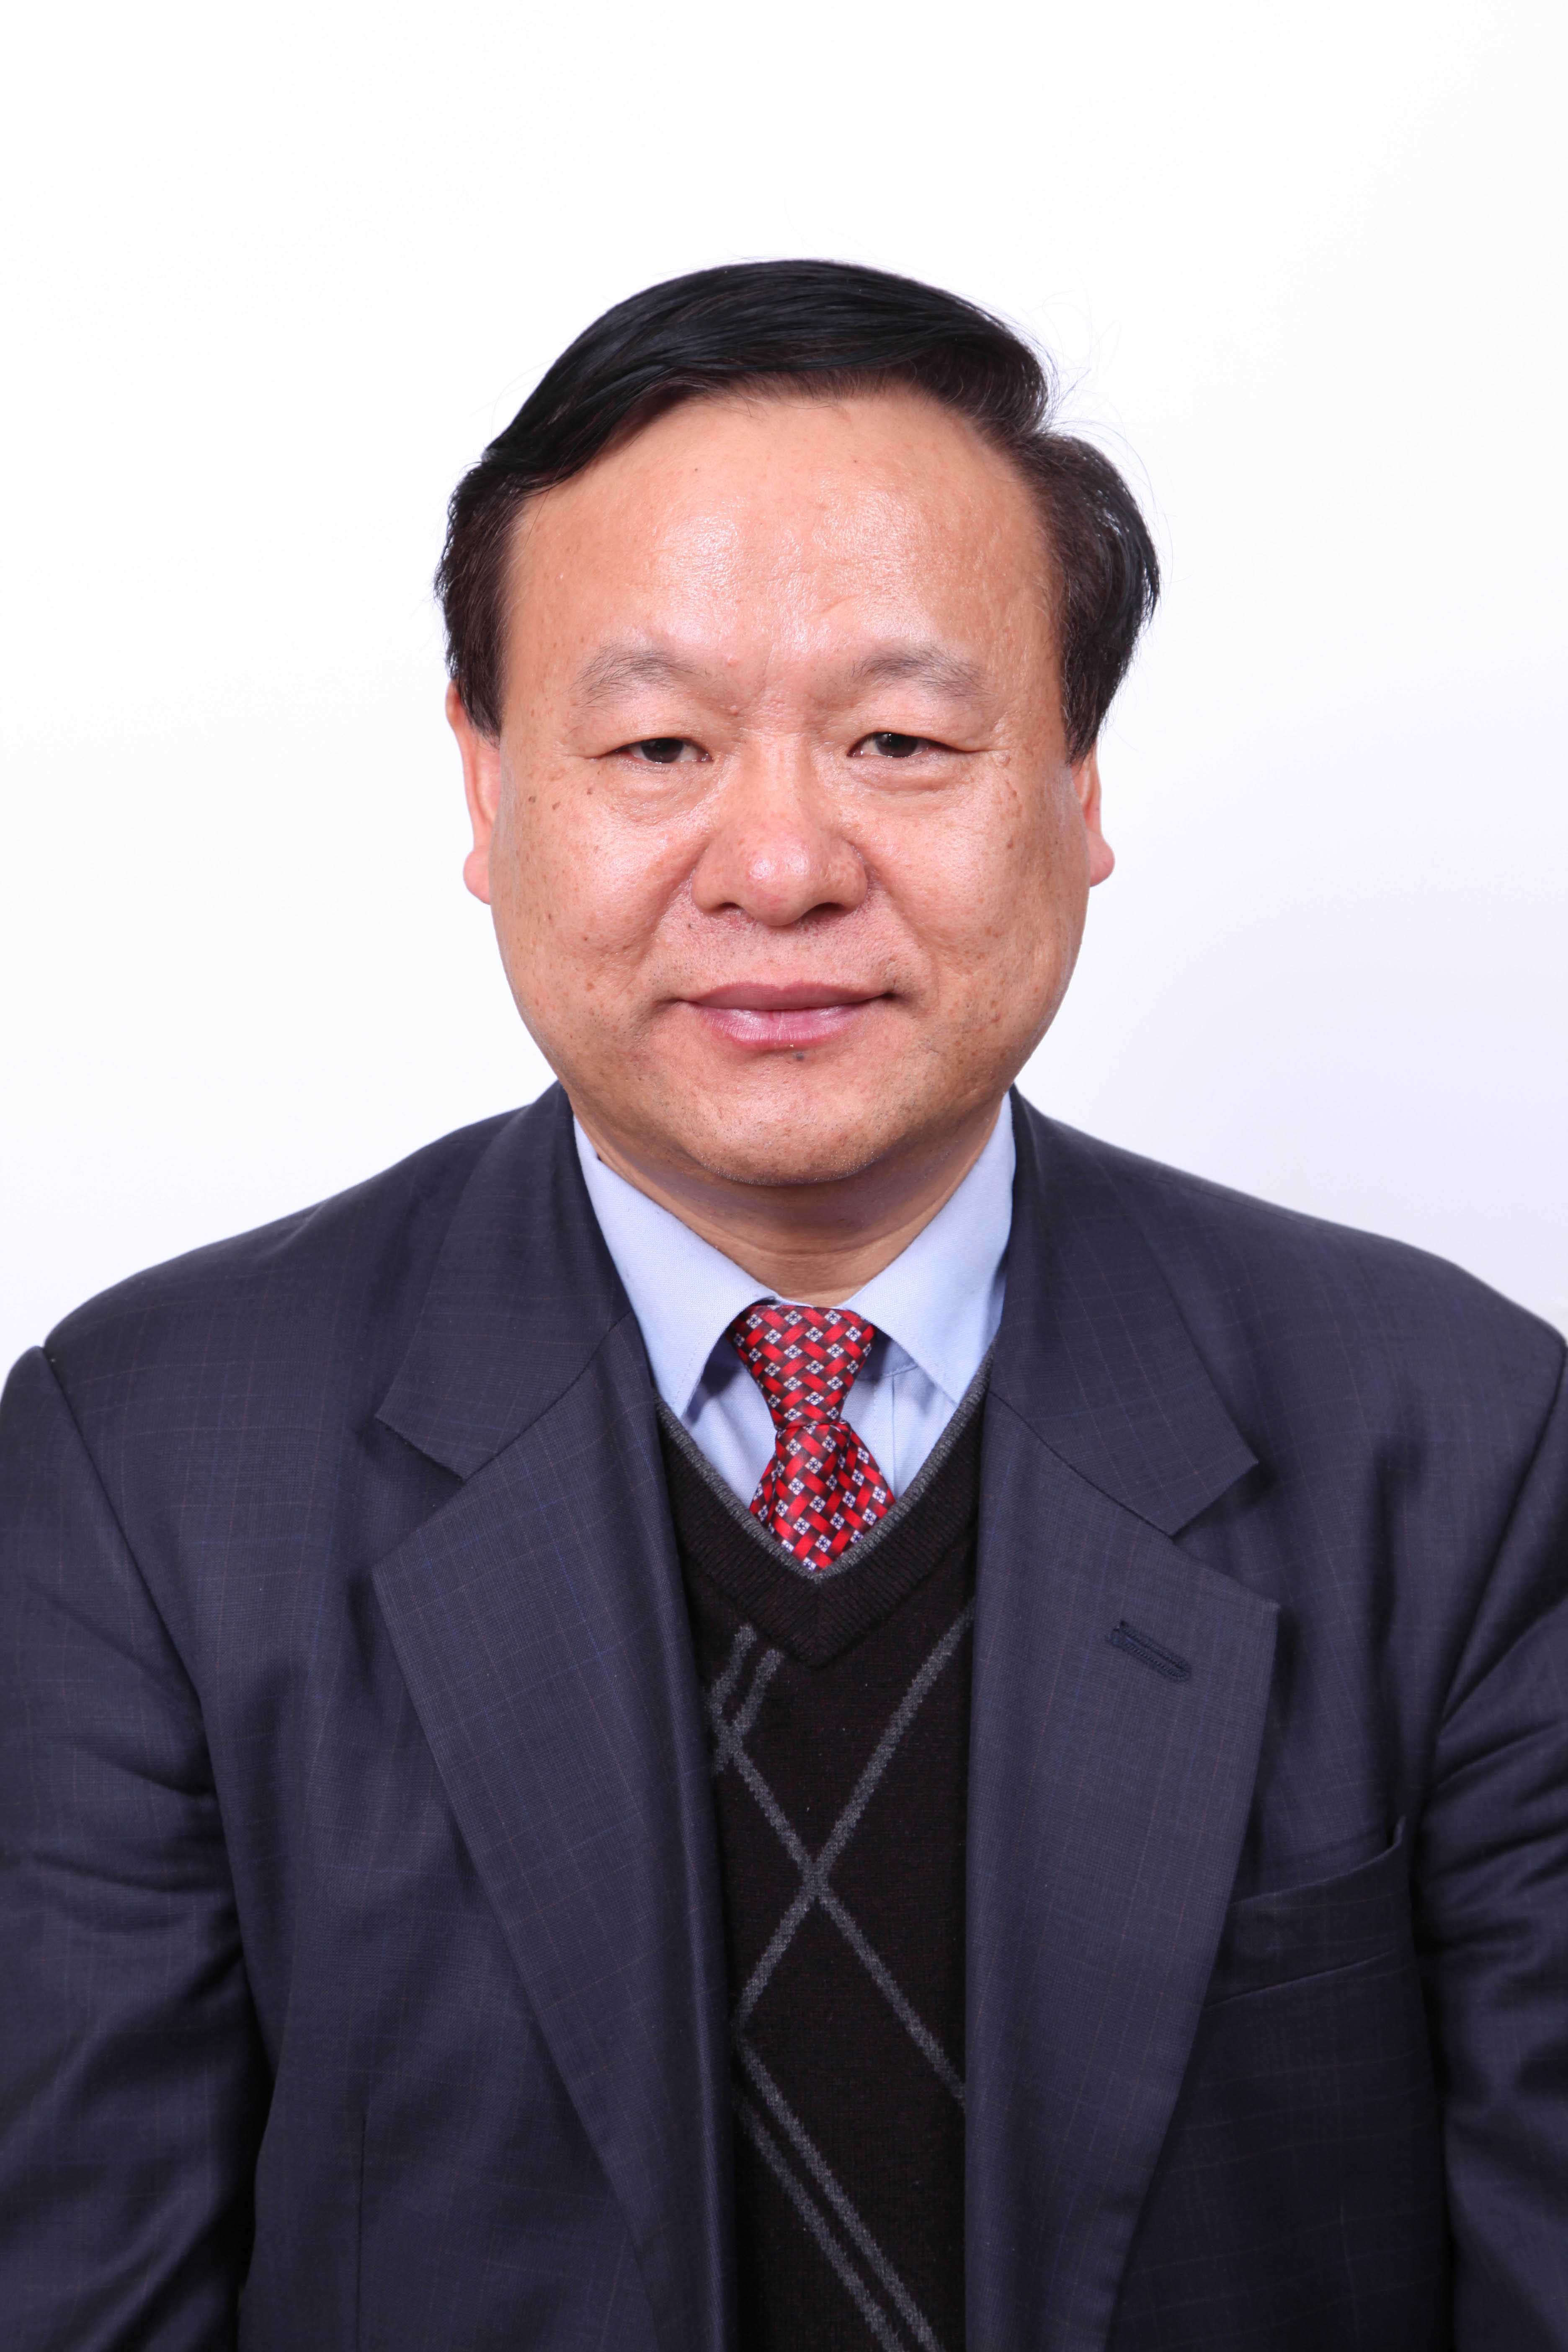 Jiping Zhang